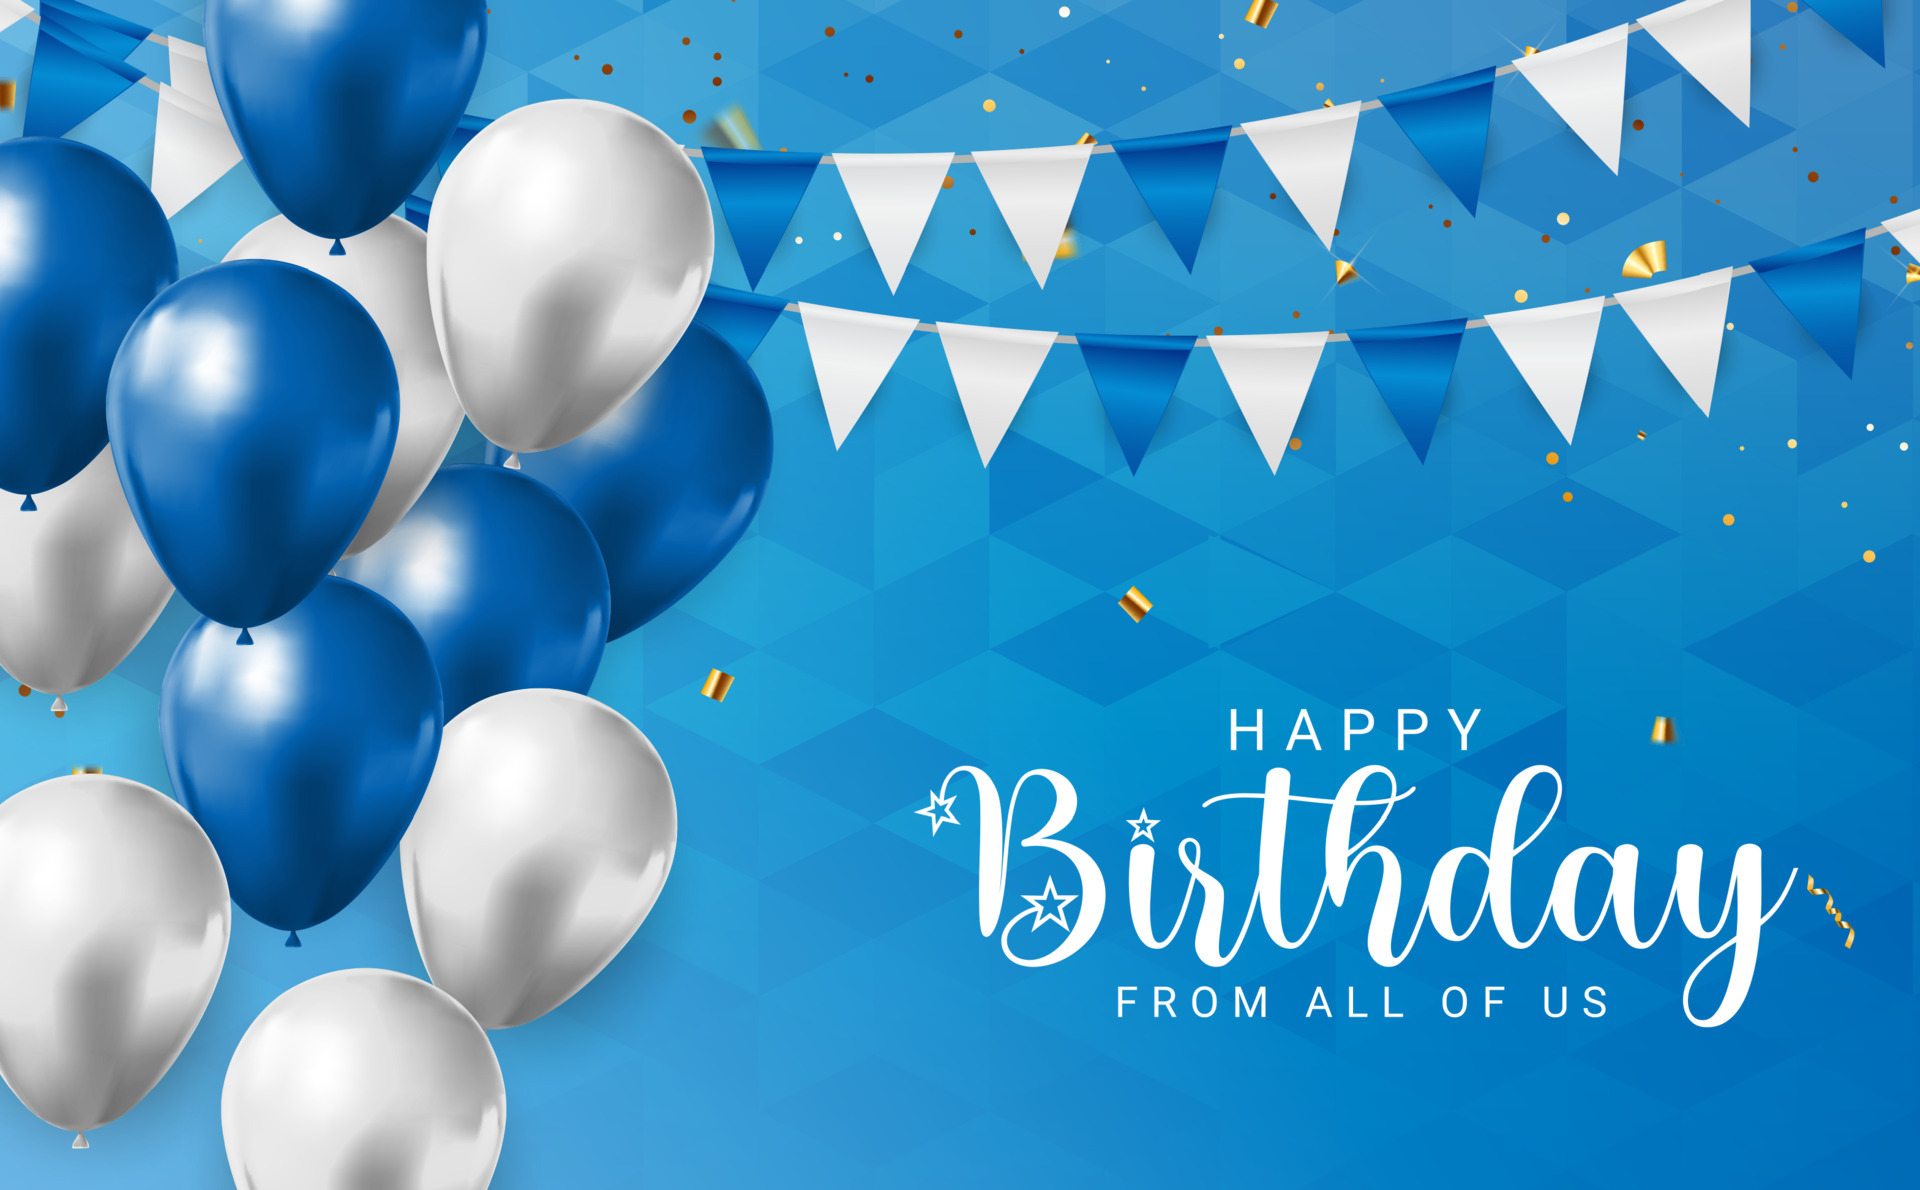 Banner chúc mừng sinh nhật với họa tiết Confetti trên nền màu xanh sẽ khiến những người thân yêu của bạn cảm thấy vui tươi và sôi động vào ngày quan trọng. Hãy nhấp chuột để xem hình ảnh liên quan và tìm hiểu thêm về cách tạo ra một bữa tiệc sinh nhật đầy màu sắc!